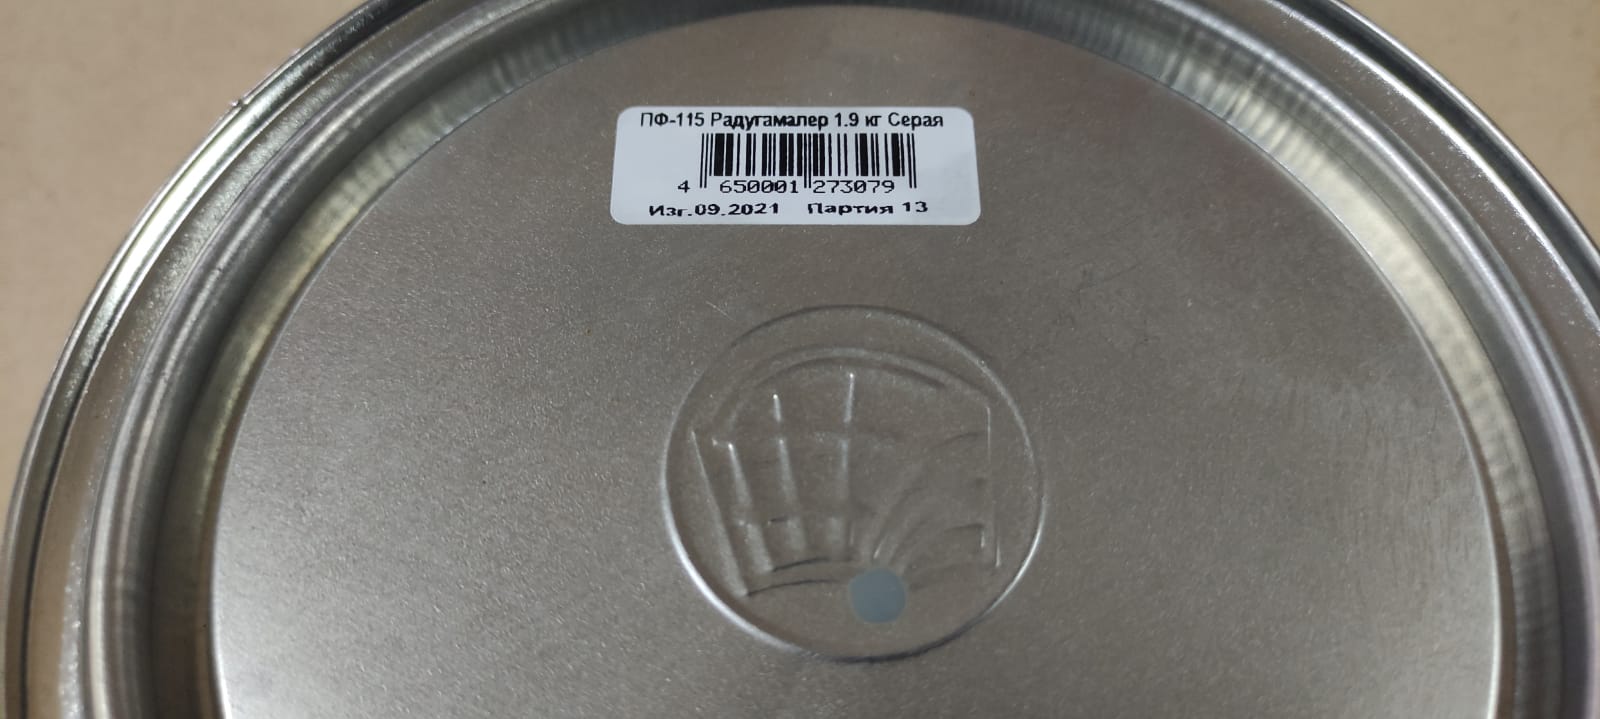 Эмаль ПФ 115 универсальная РадугаМалер 1,9 кг (серая)